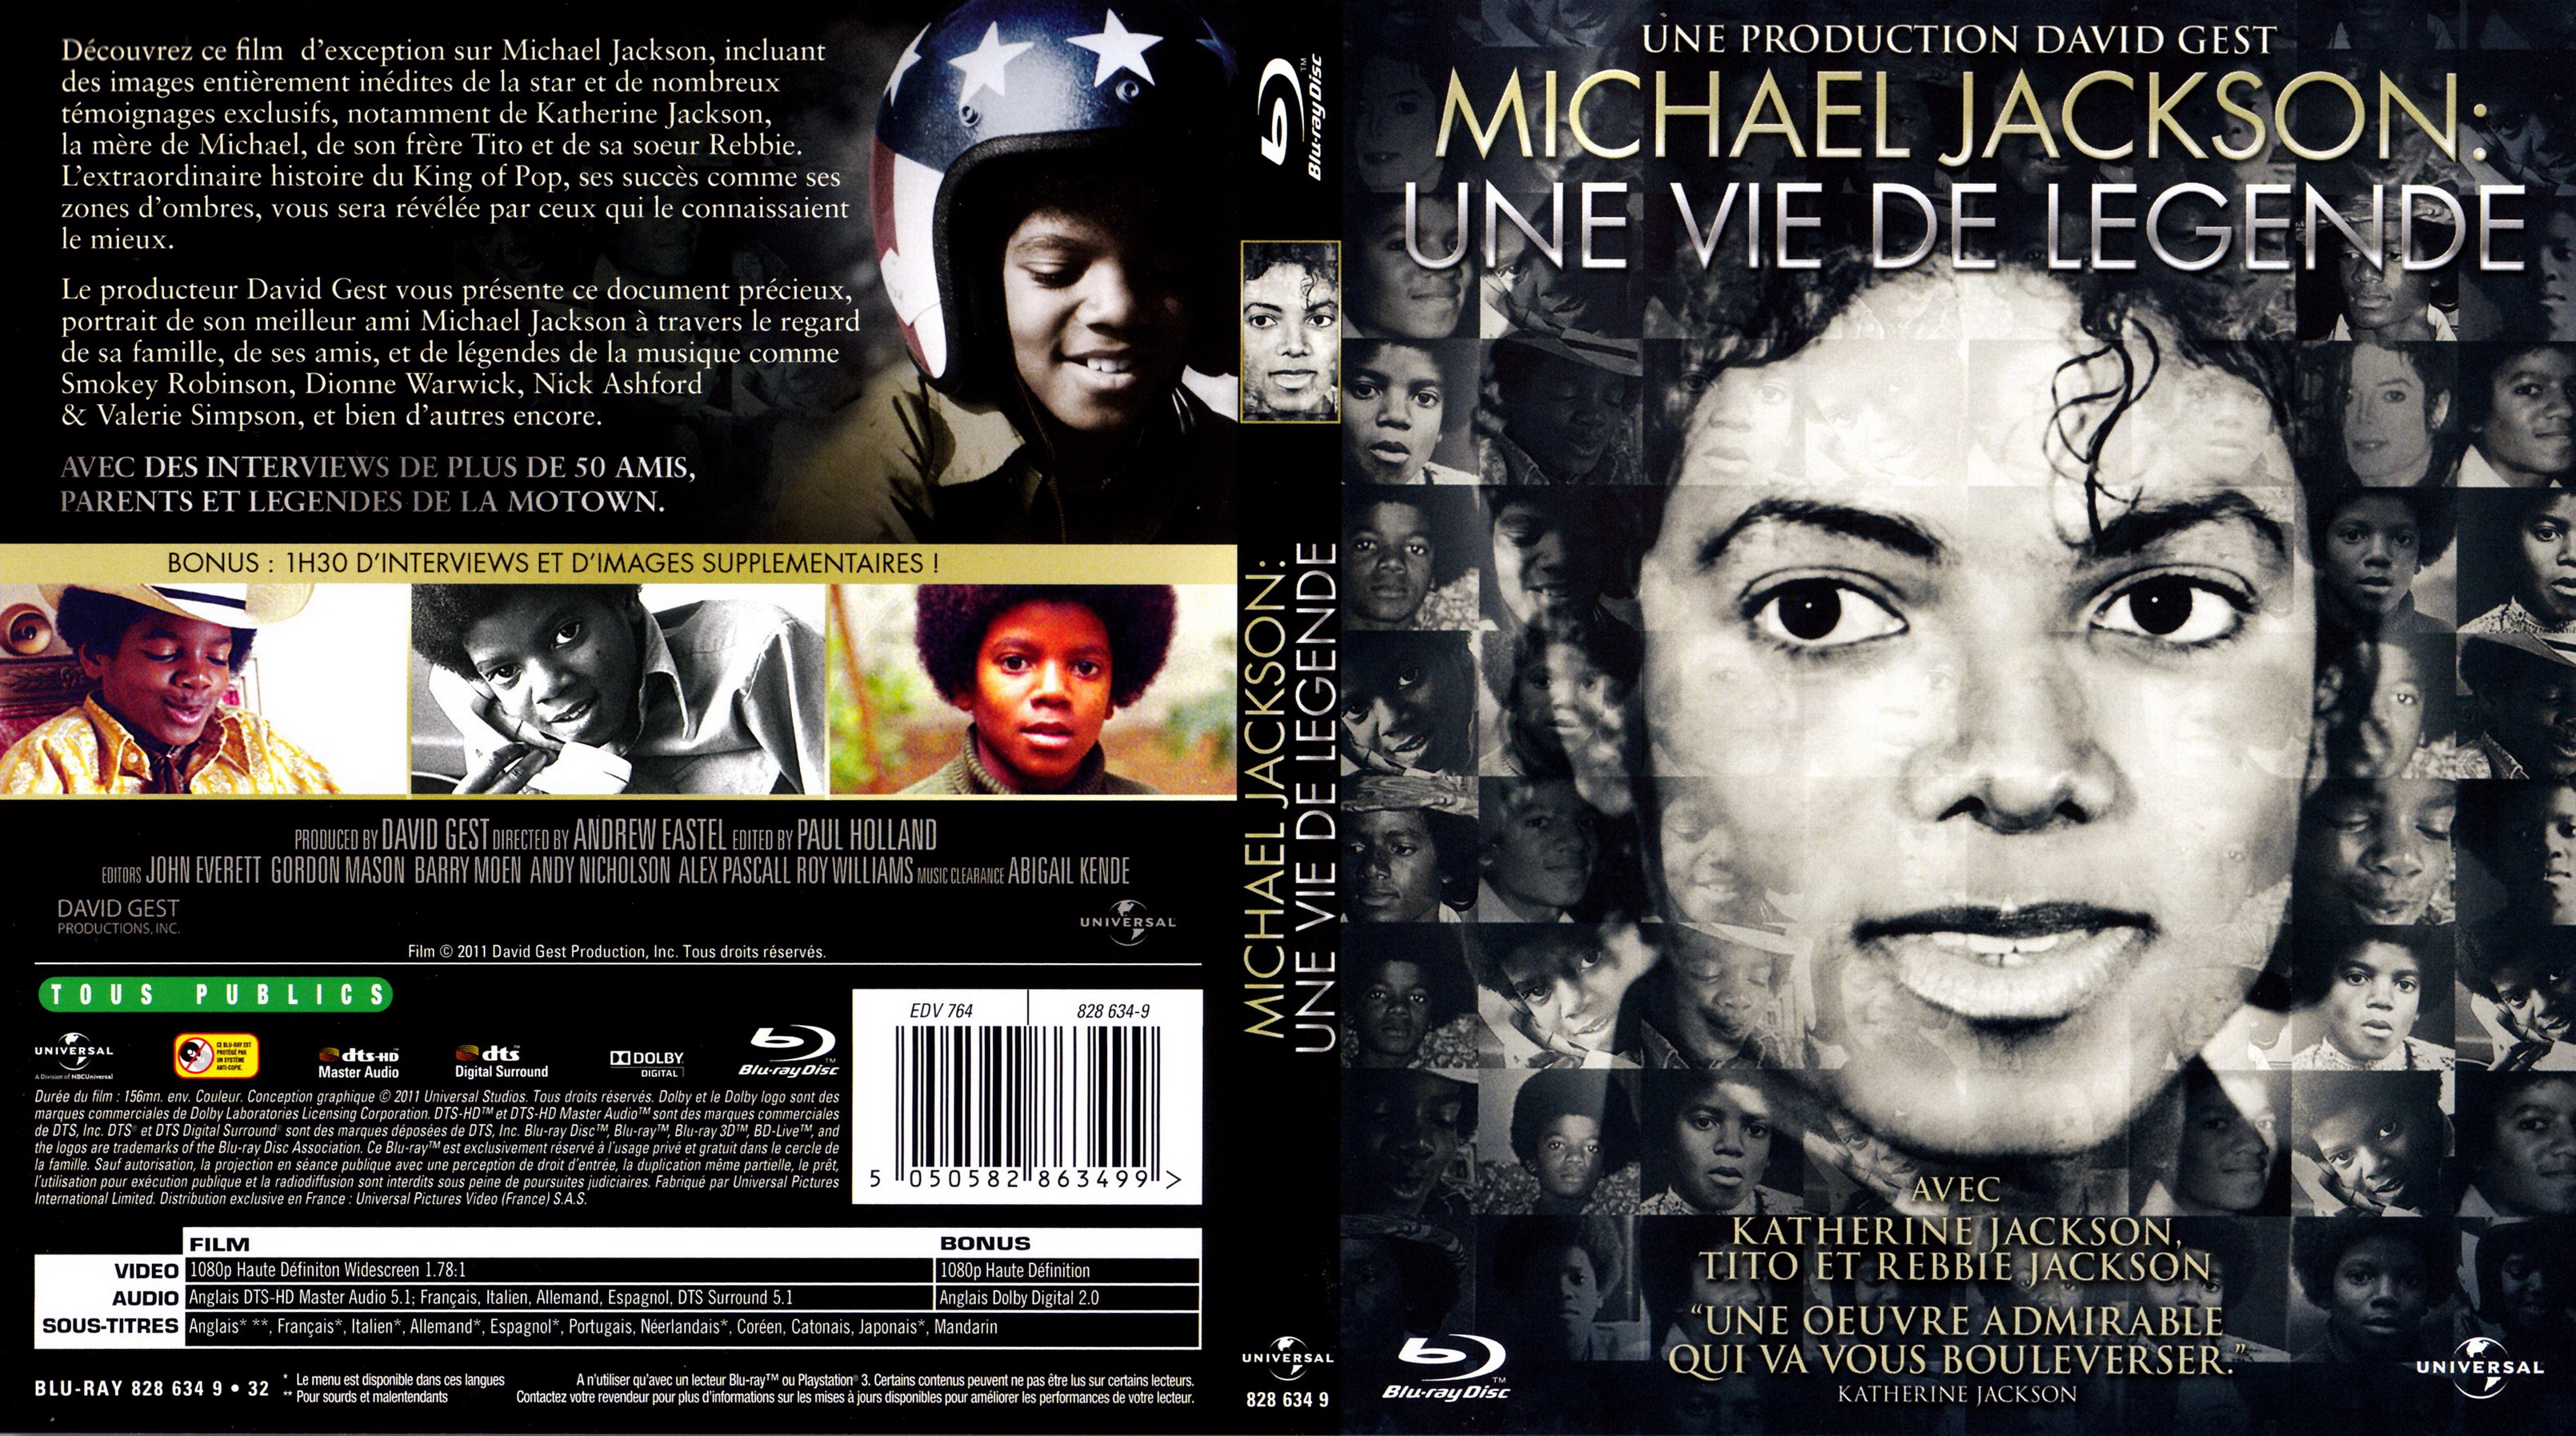 Jaquette DVD Michael Jackson une vie de lgende (BLU-RAY)